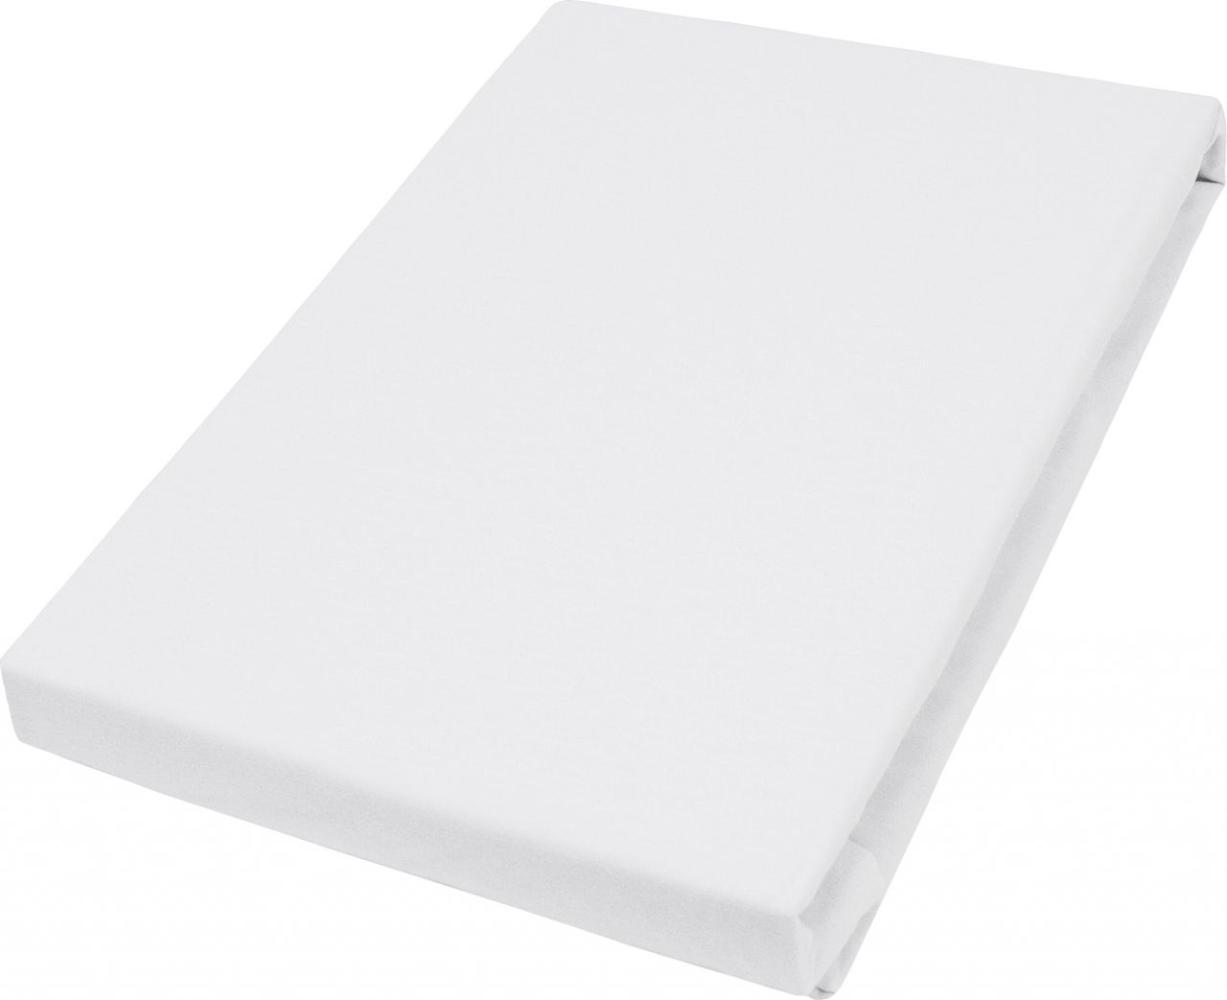 Vario Jersey-Spannbetttuch Elastan für Topper weiß, 150 x 200 cm Bild 1